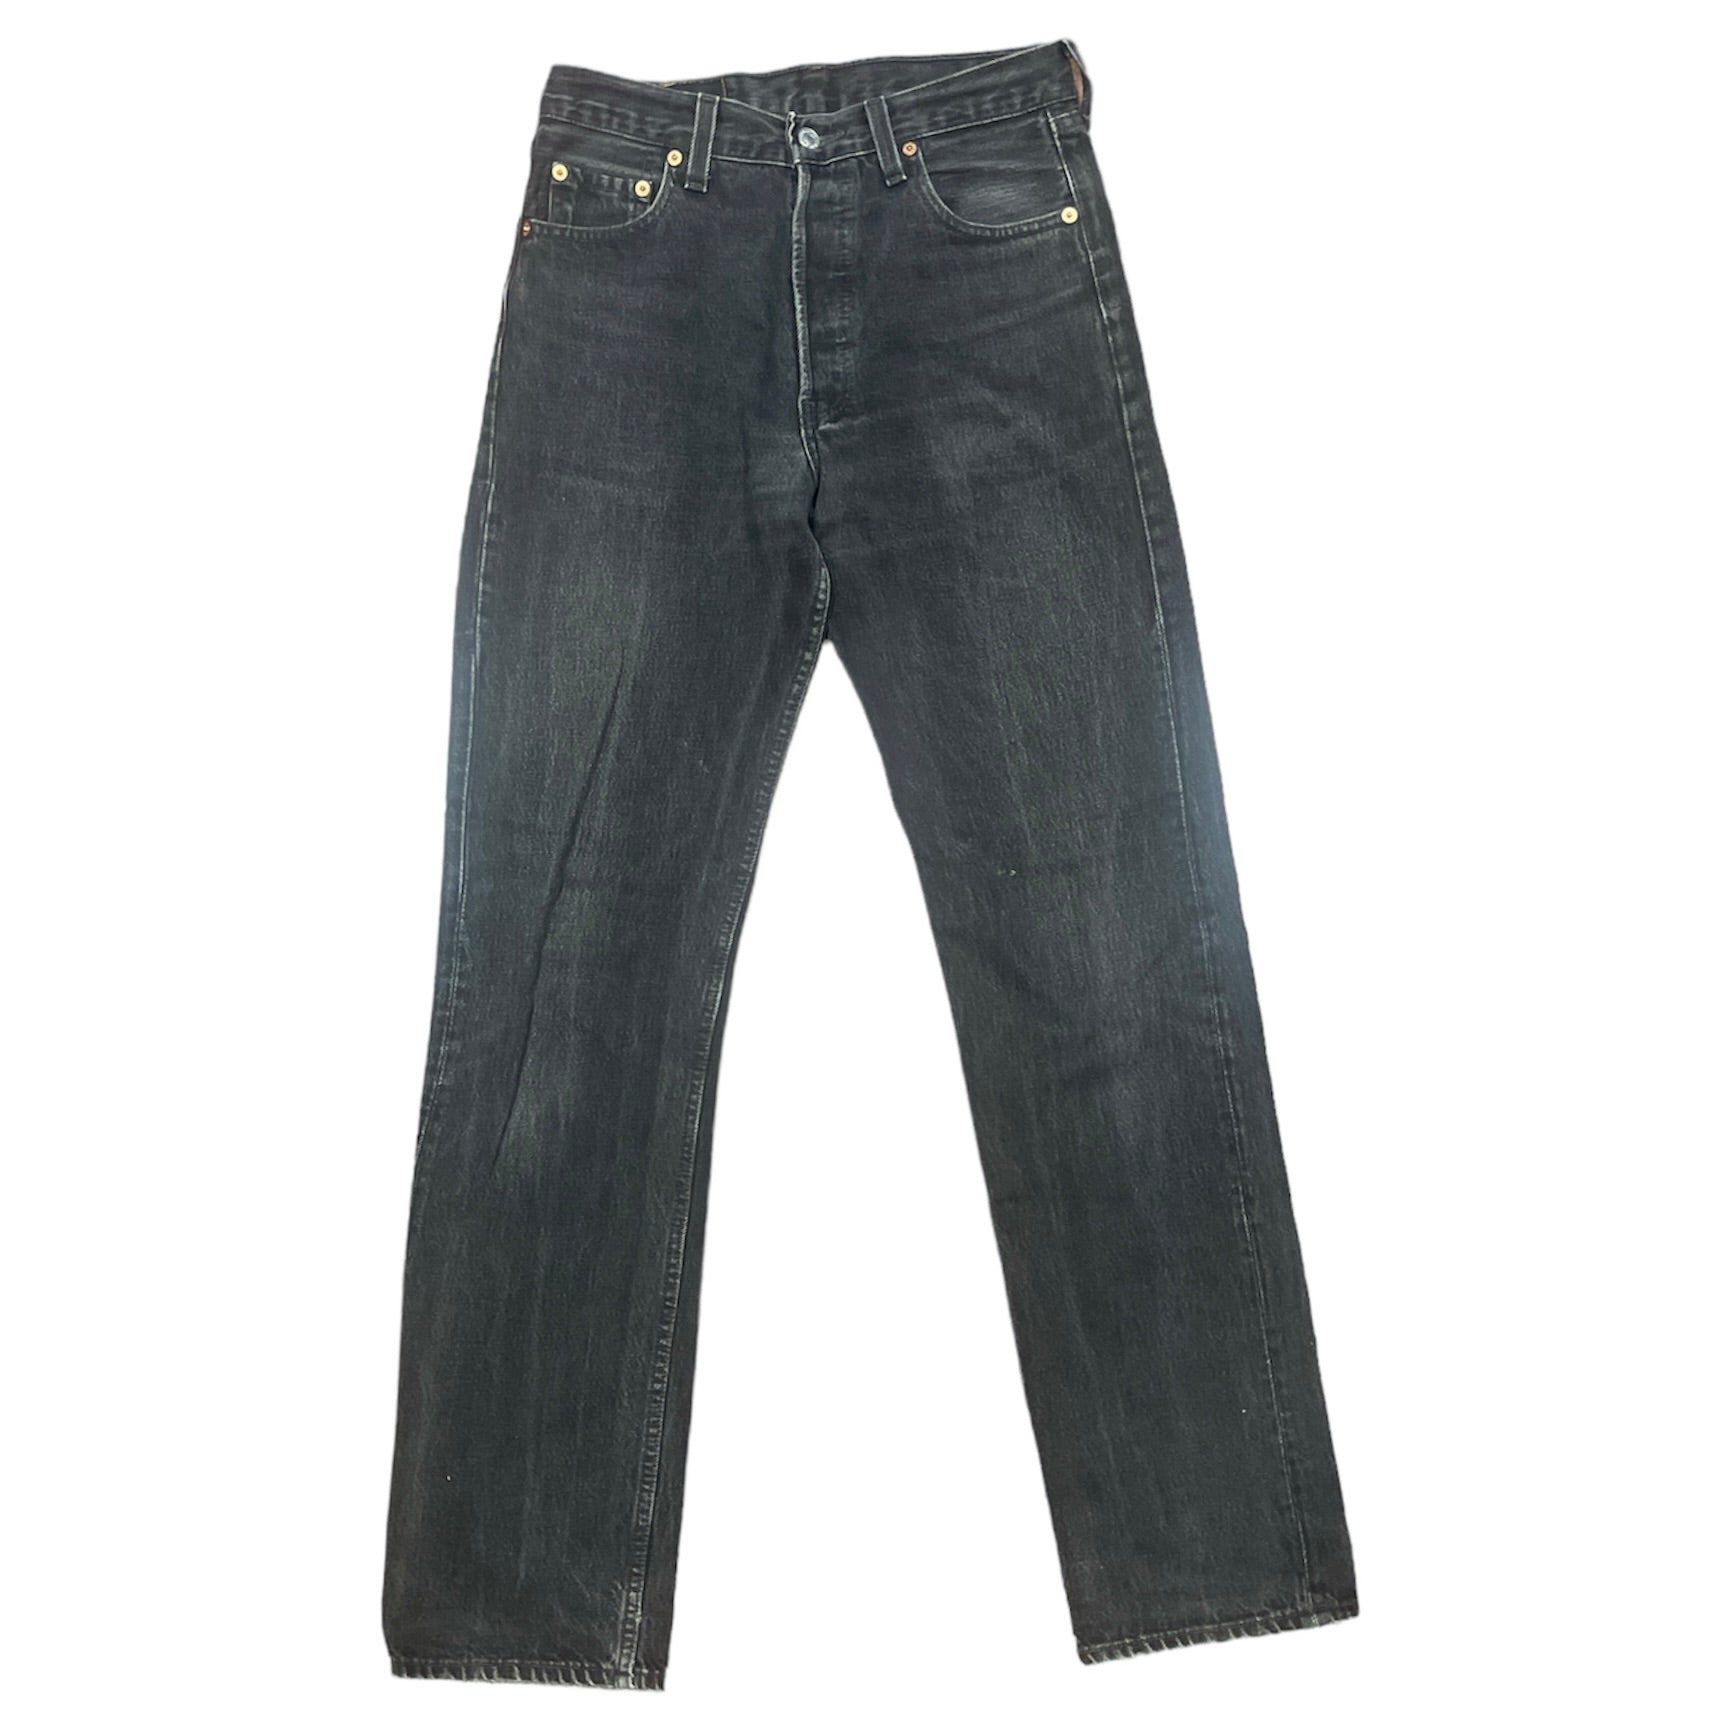 Vintage Levis 501 Grey/Black Jeans (W29/L34)